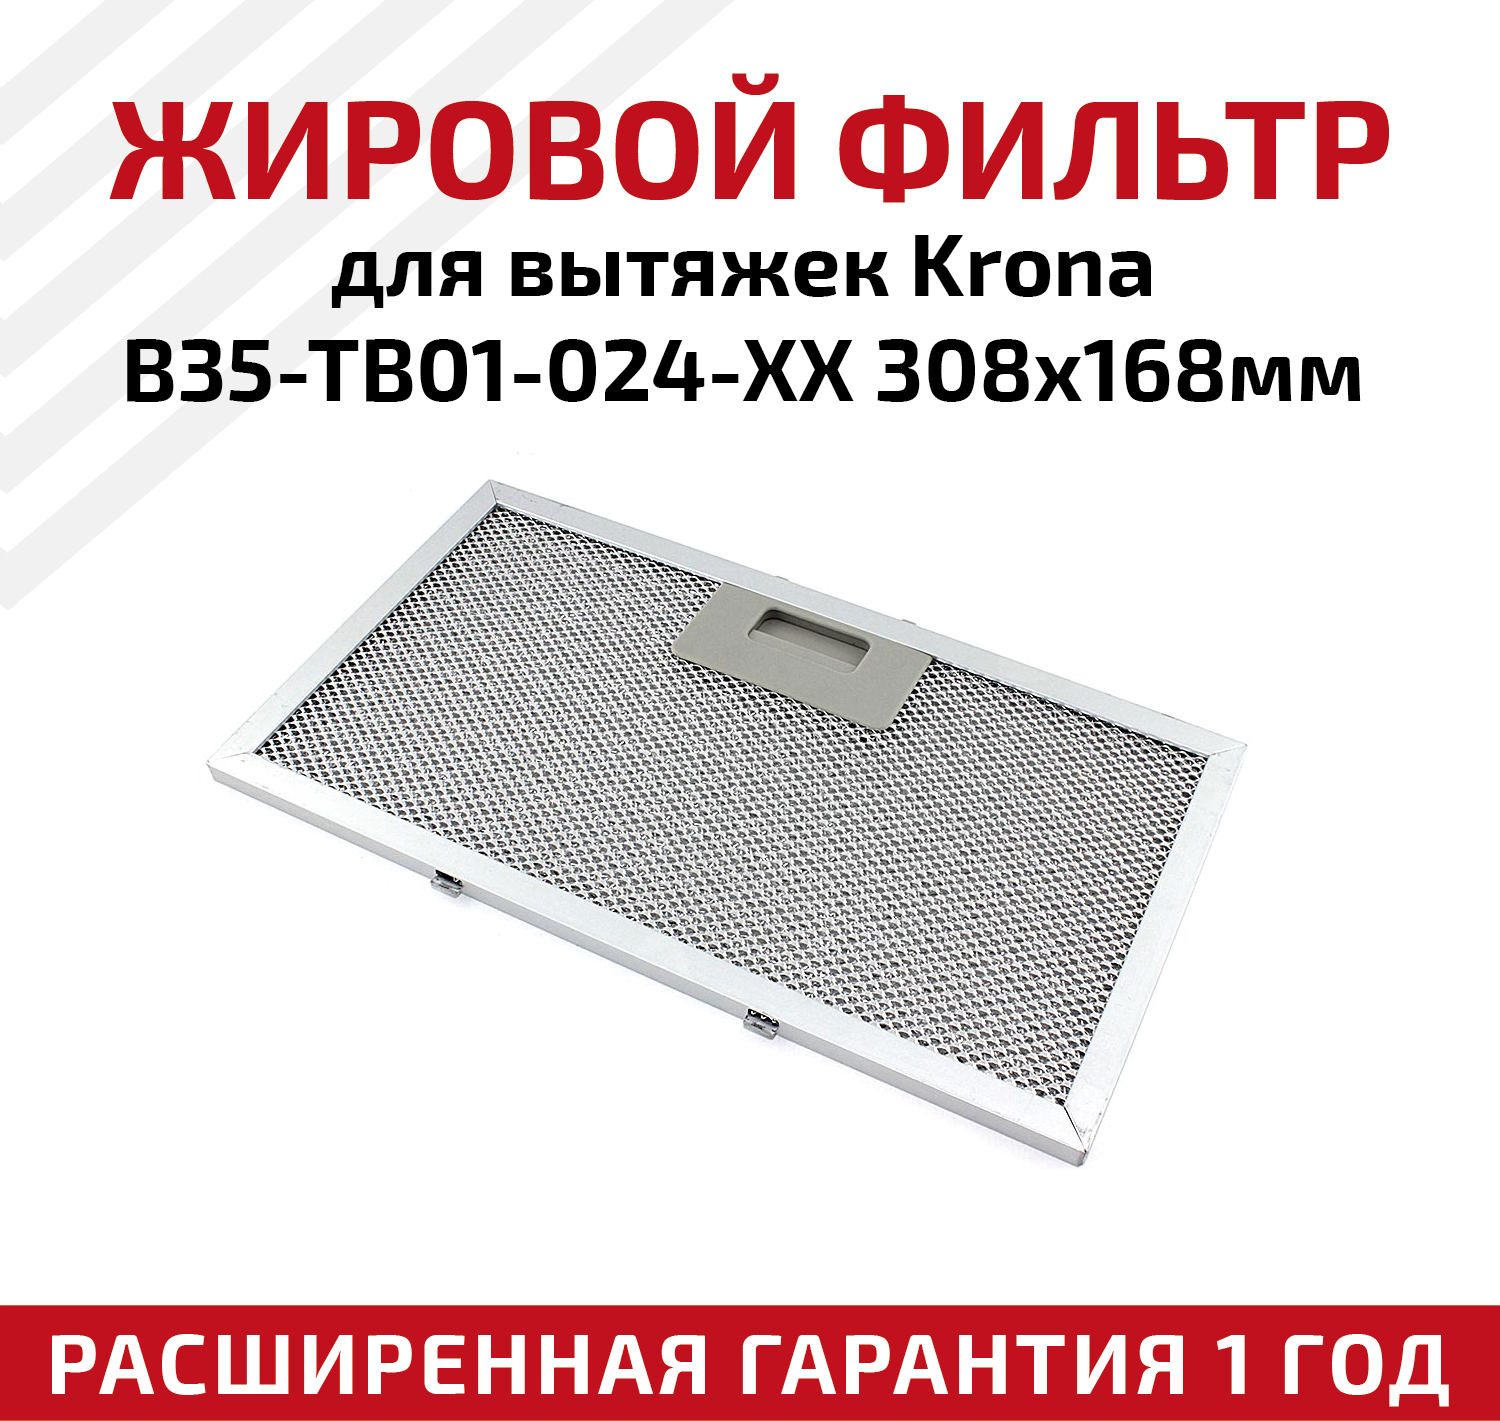 Жировой фильтр (кассета) алюминиевый (металлический) рамочный для кухонных вытяжек Krona B35-TB01-024-XX, многоразовый, 308х168мм